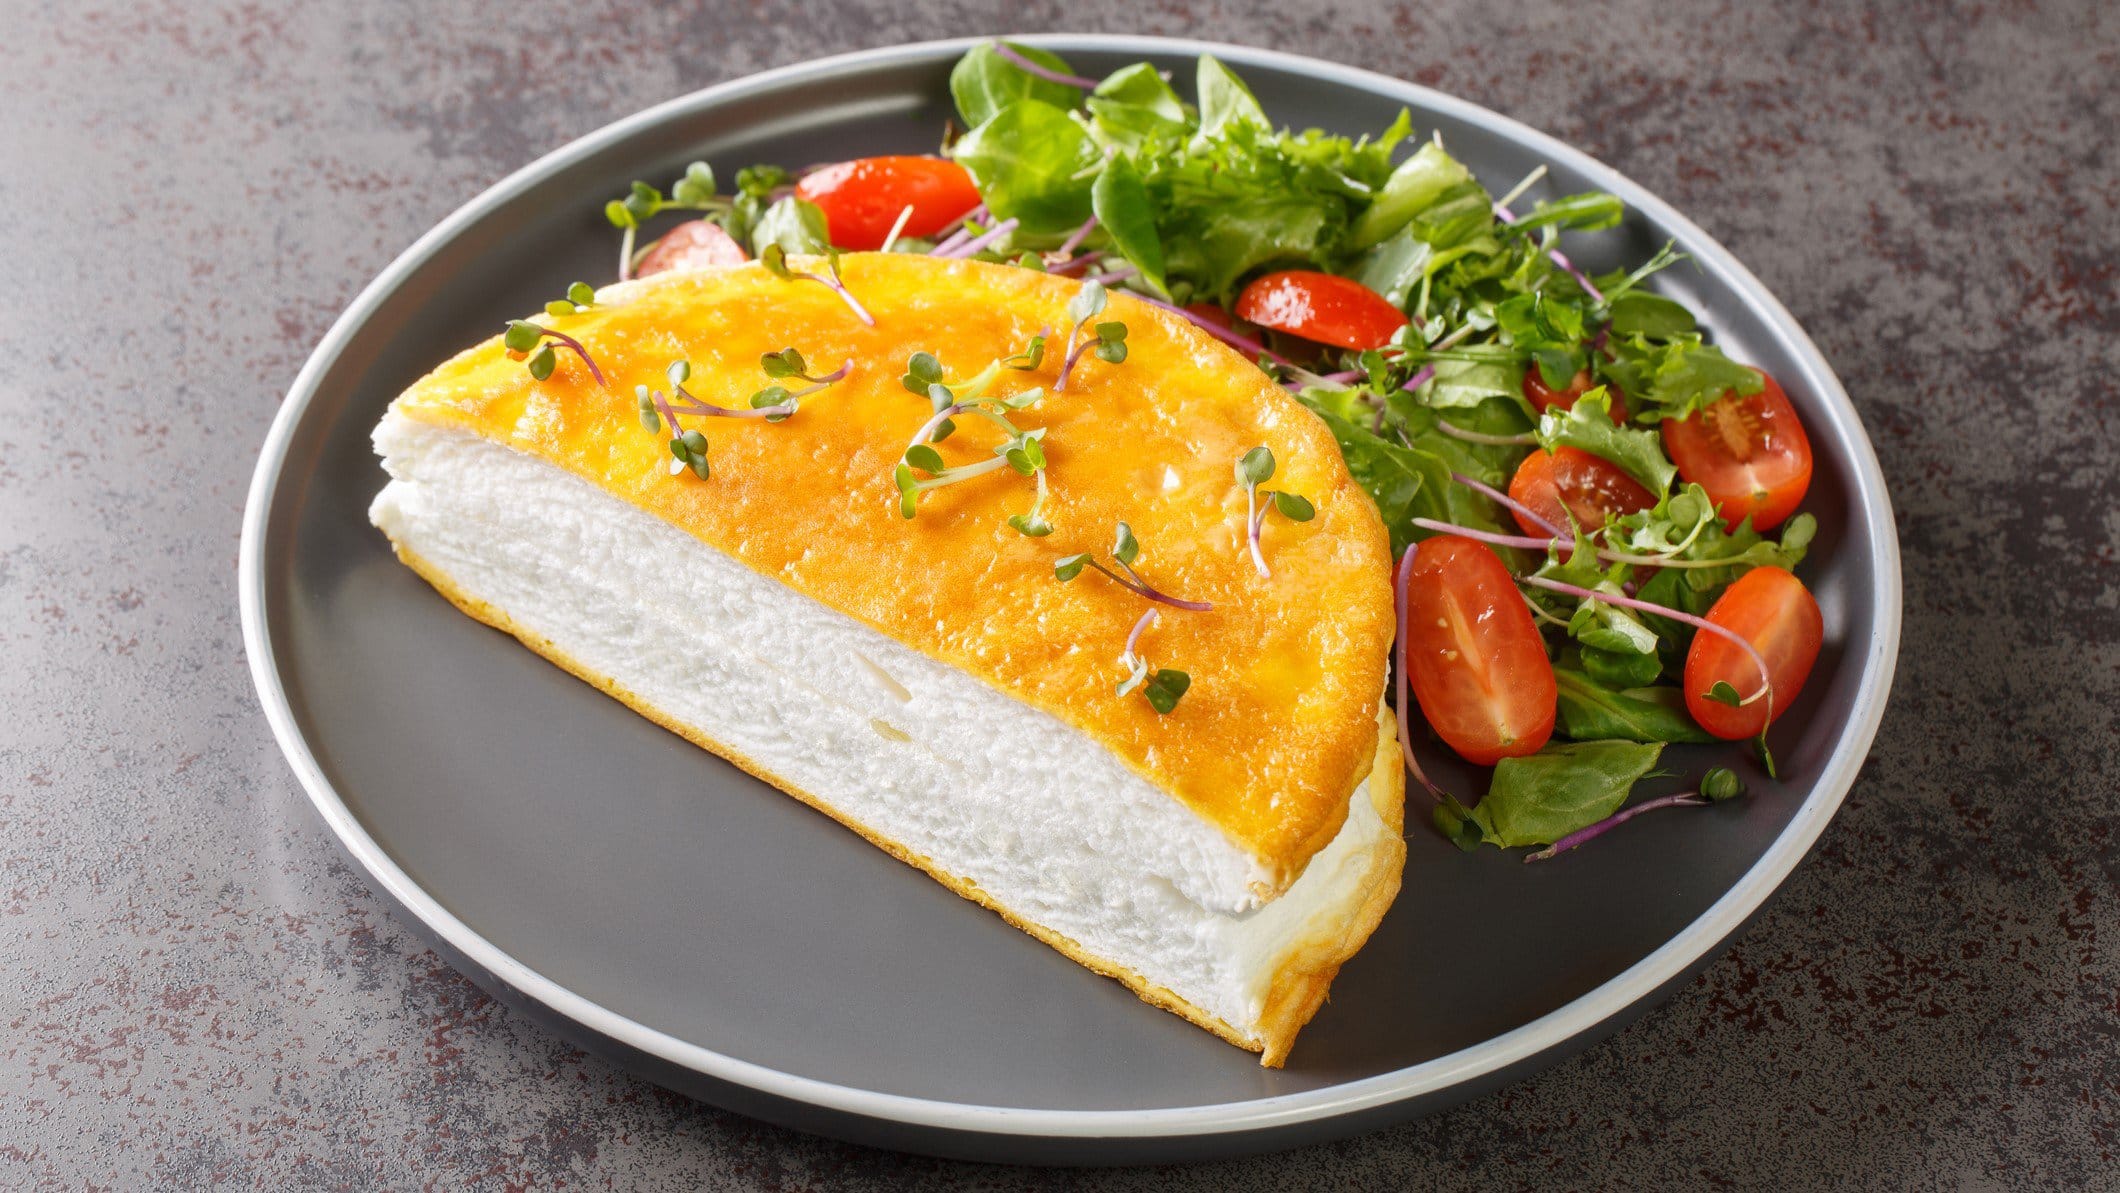 Ein Poulard-Omelett auf einem grauen Teller m und grauem Untergrund.it etwas Salat